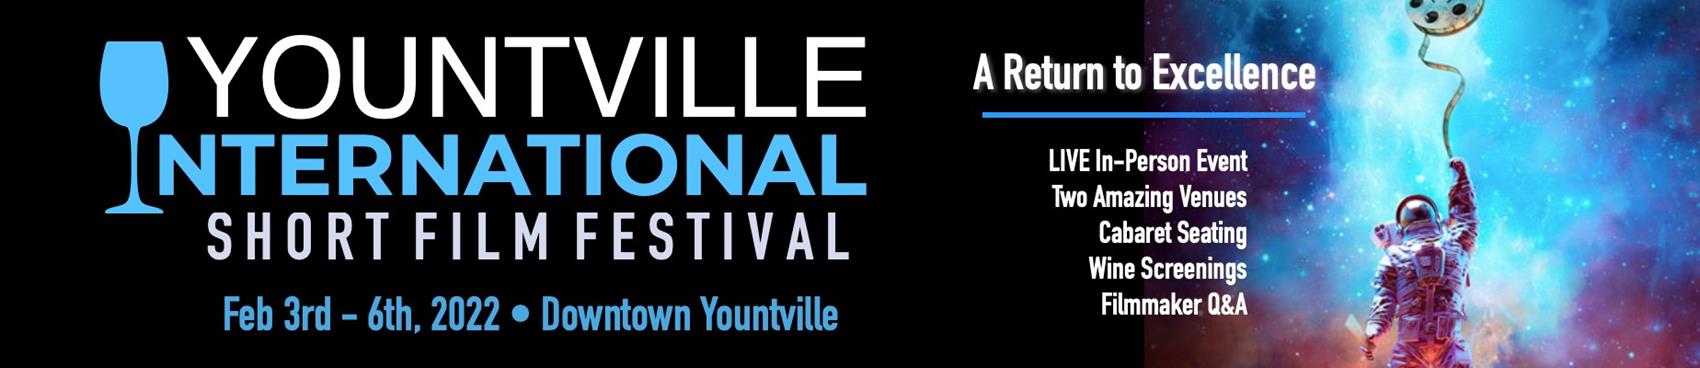 5th Annual Yountville International Short Film Festival 2022